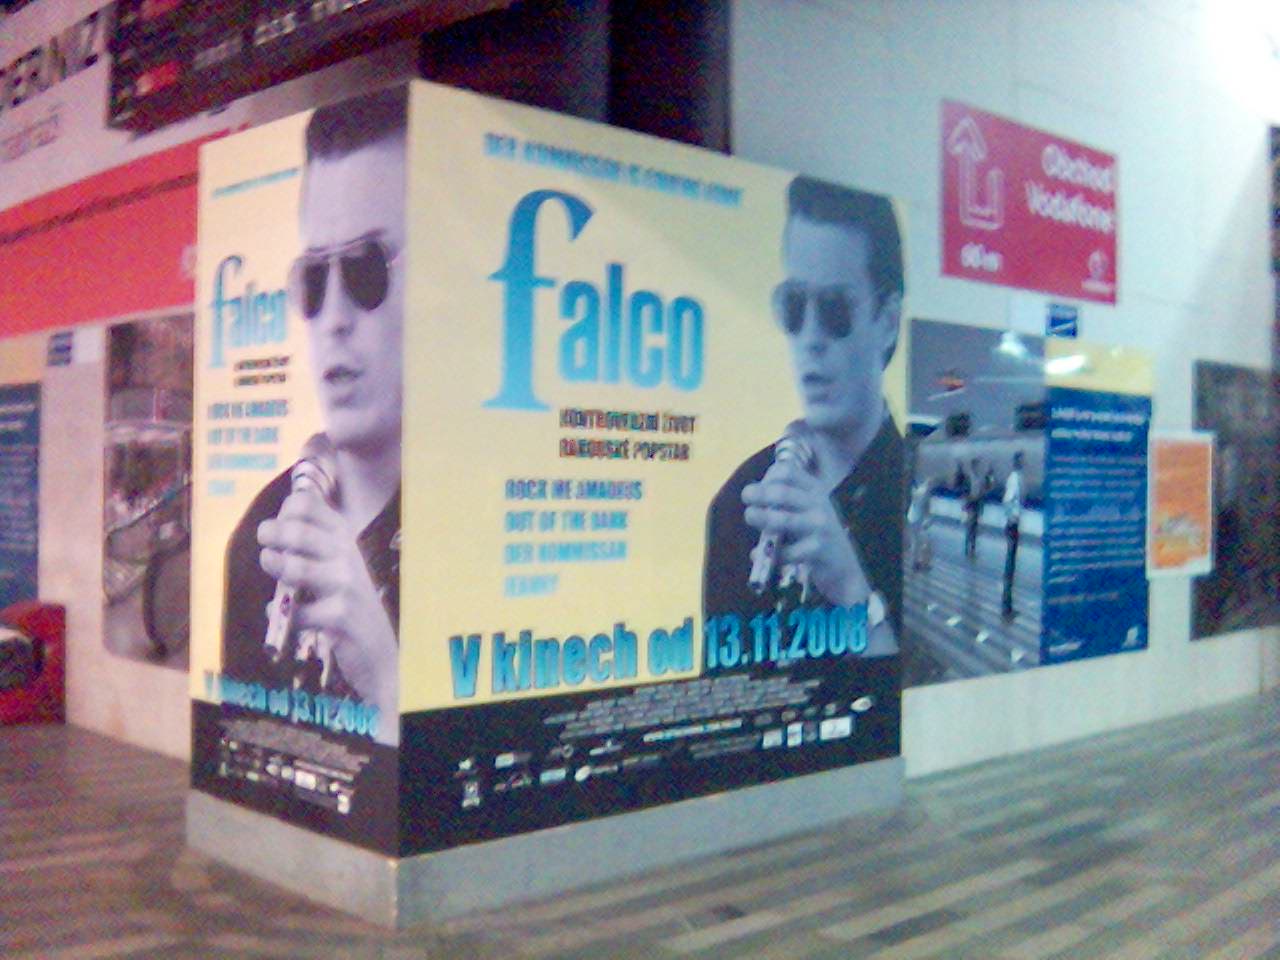 02. Plakát Falco ze dvou stran.jpg